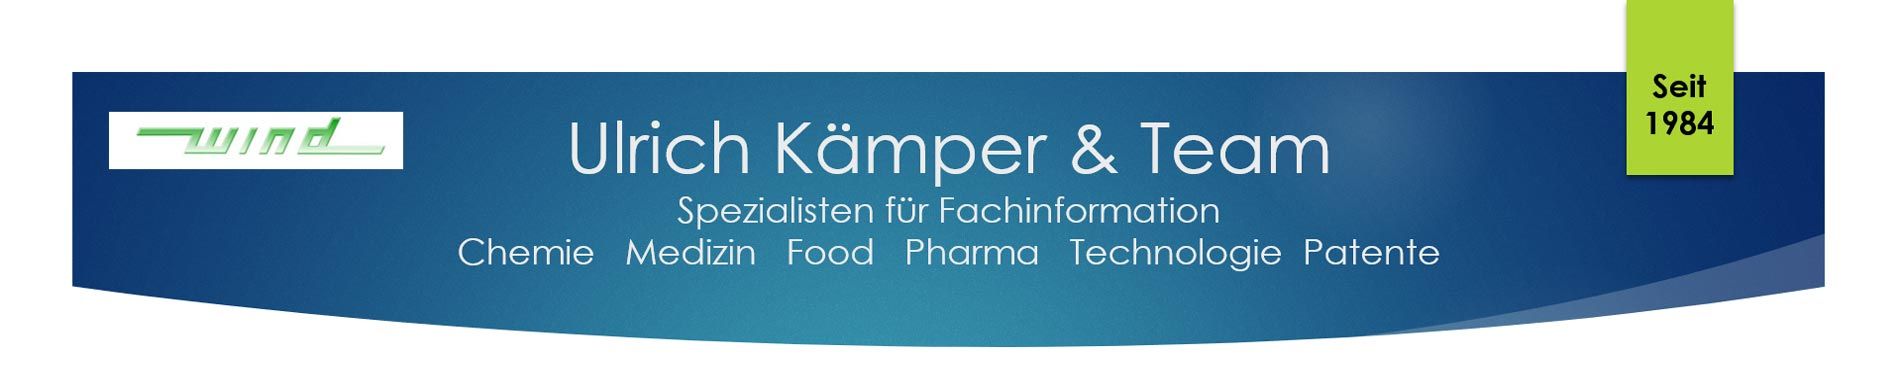 Ulrich Kämper & Team, Spezialisten für Fachinformationen